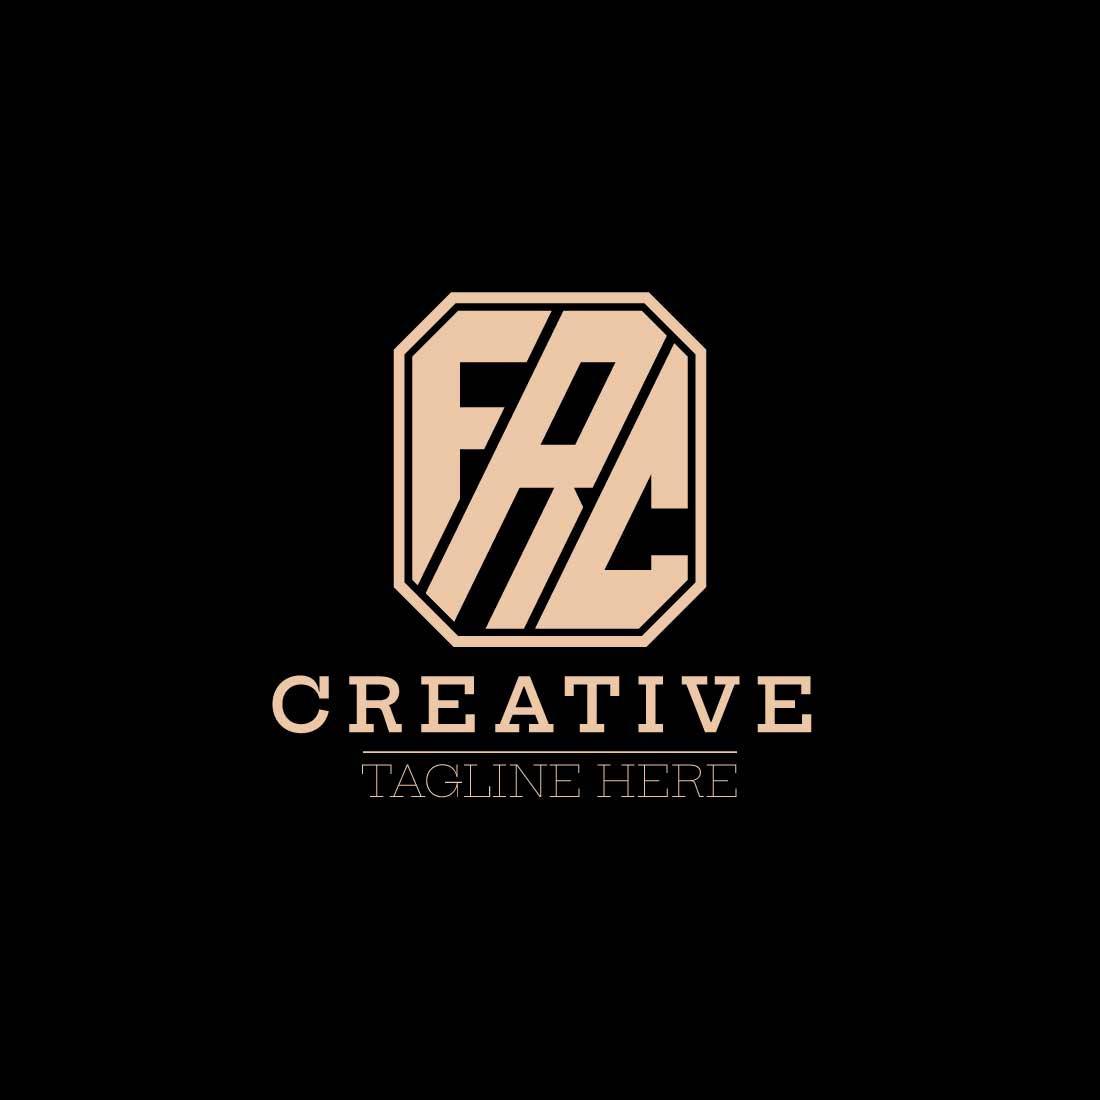 Professional letter FRC logo design cover image.